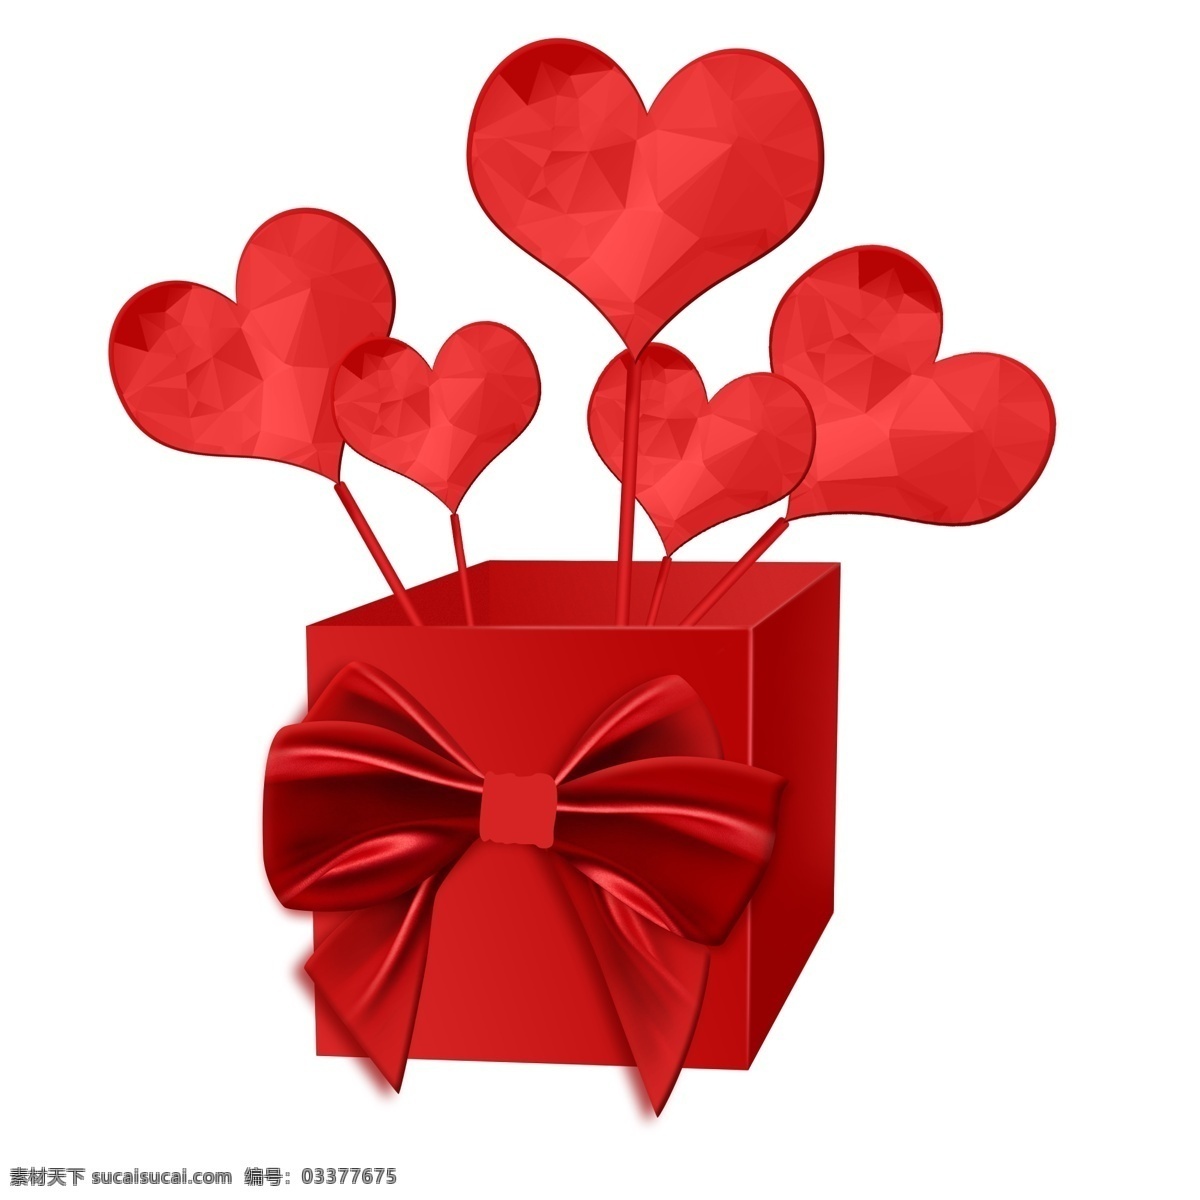 红色爱心礼盒 心 礼盒 新年 过年 情人节 情侣 蝴蝶结 心气球 卡通 活动页 红色 盒子 气球 礼花 装饰